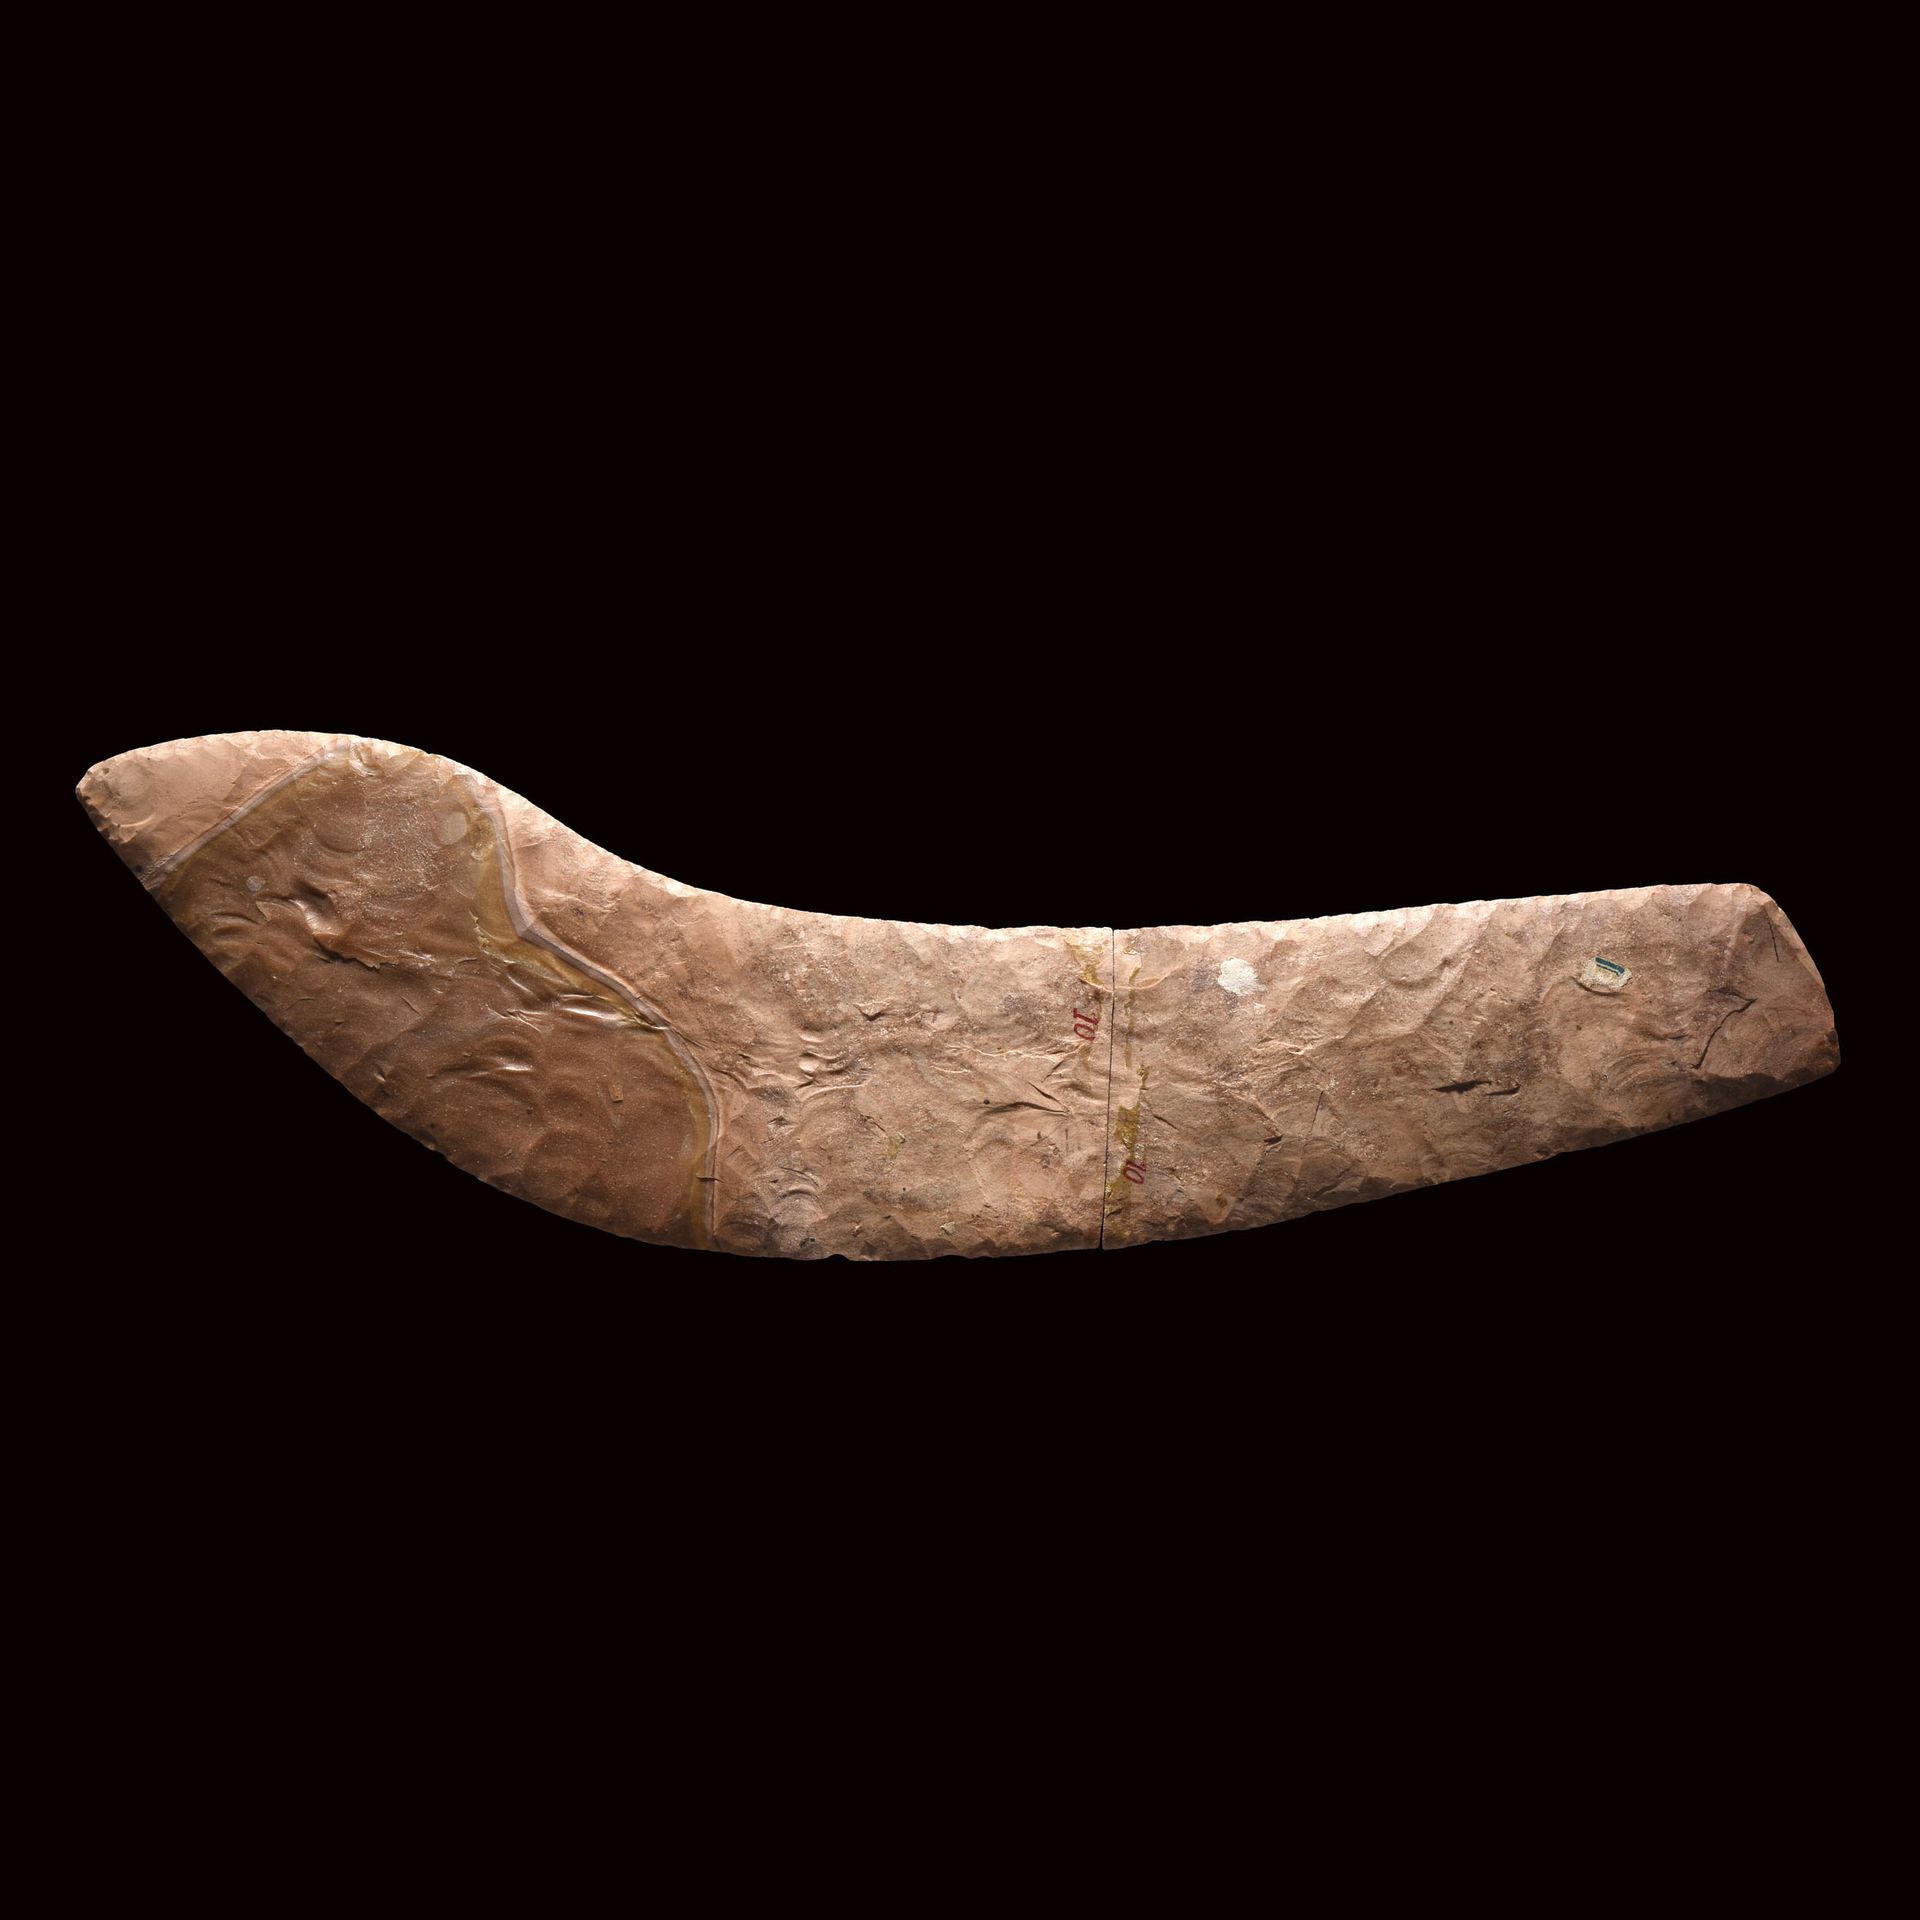 Null LAMA DI COLTELLO

Egitto, Naqada III, 3200-3000 a.C. Circa 

Flint. Spezzat&hellip;